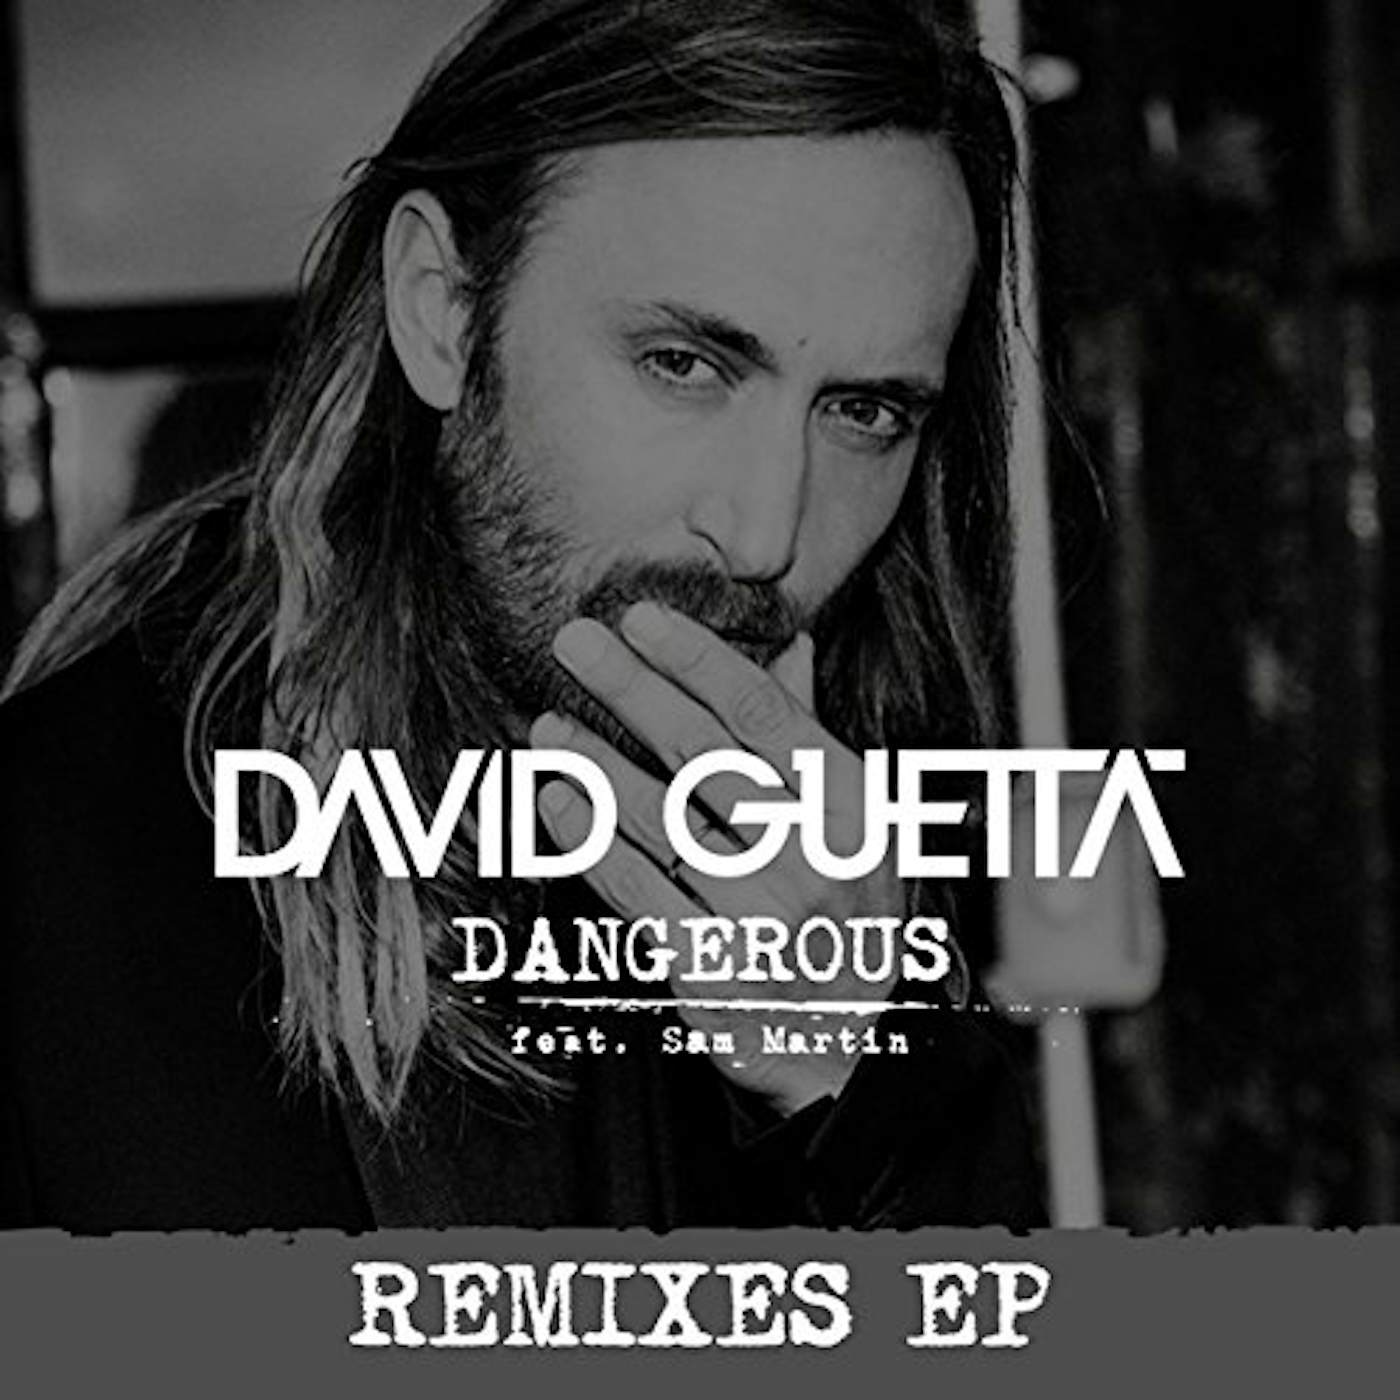 David Guetta DANGEROUS Vinyl Record